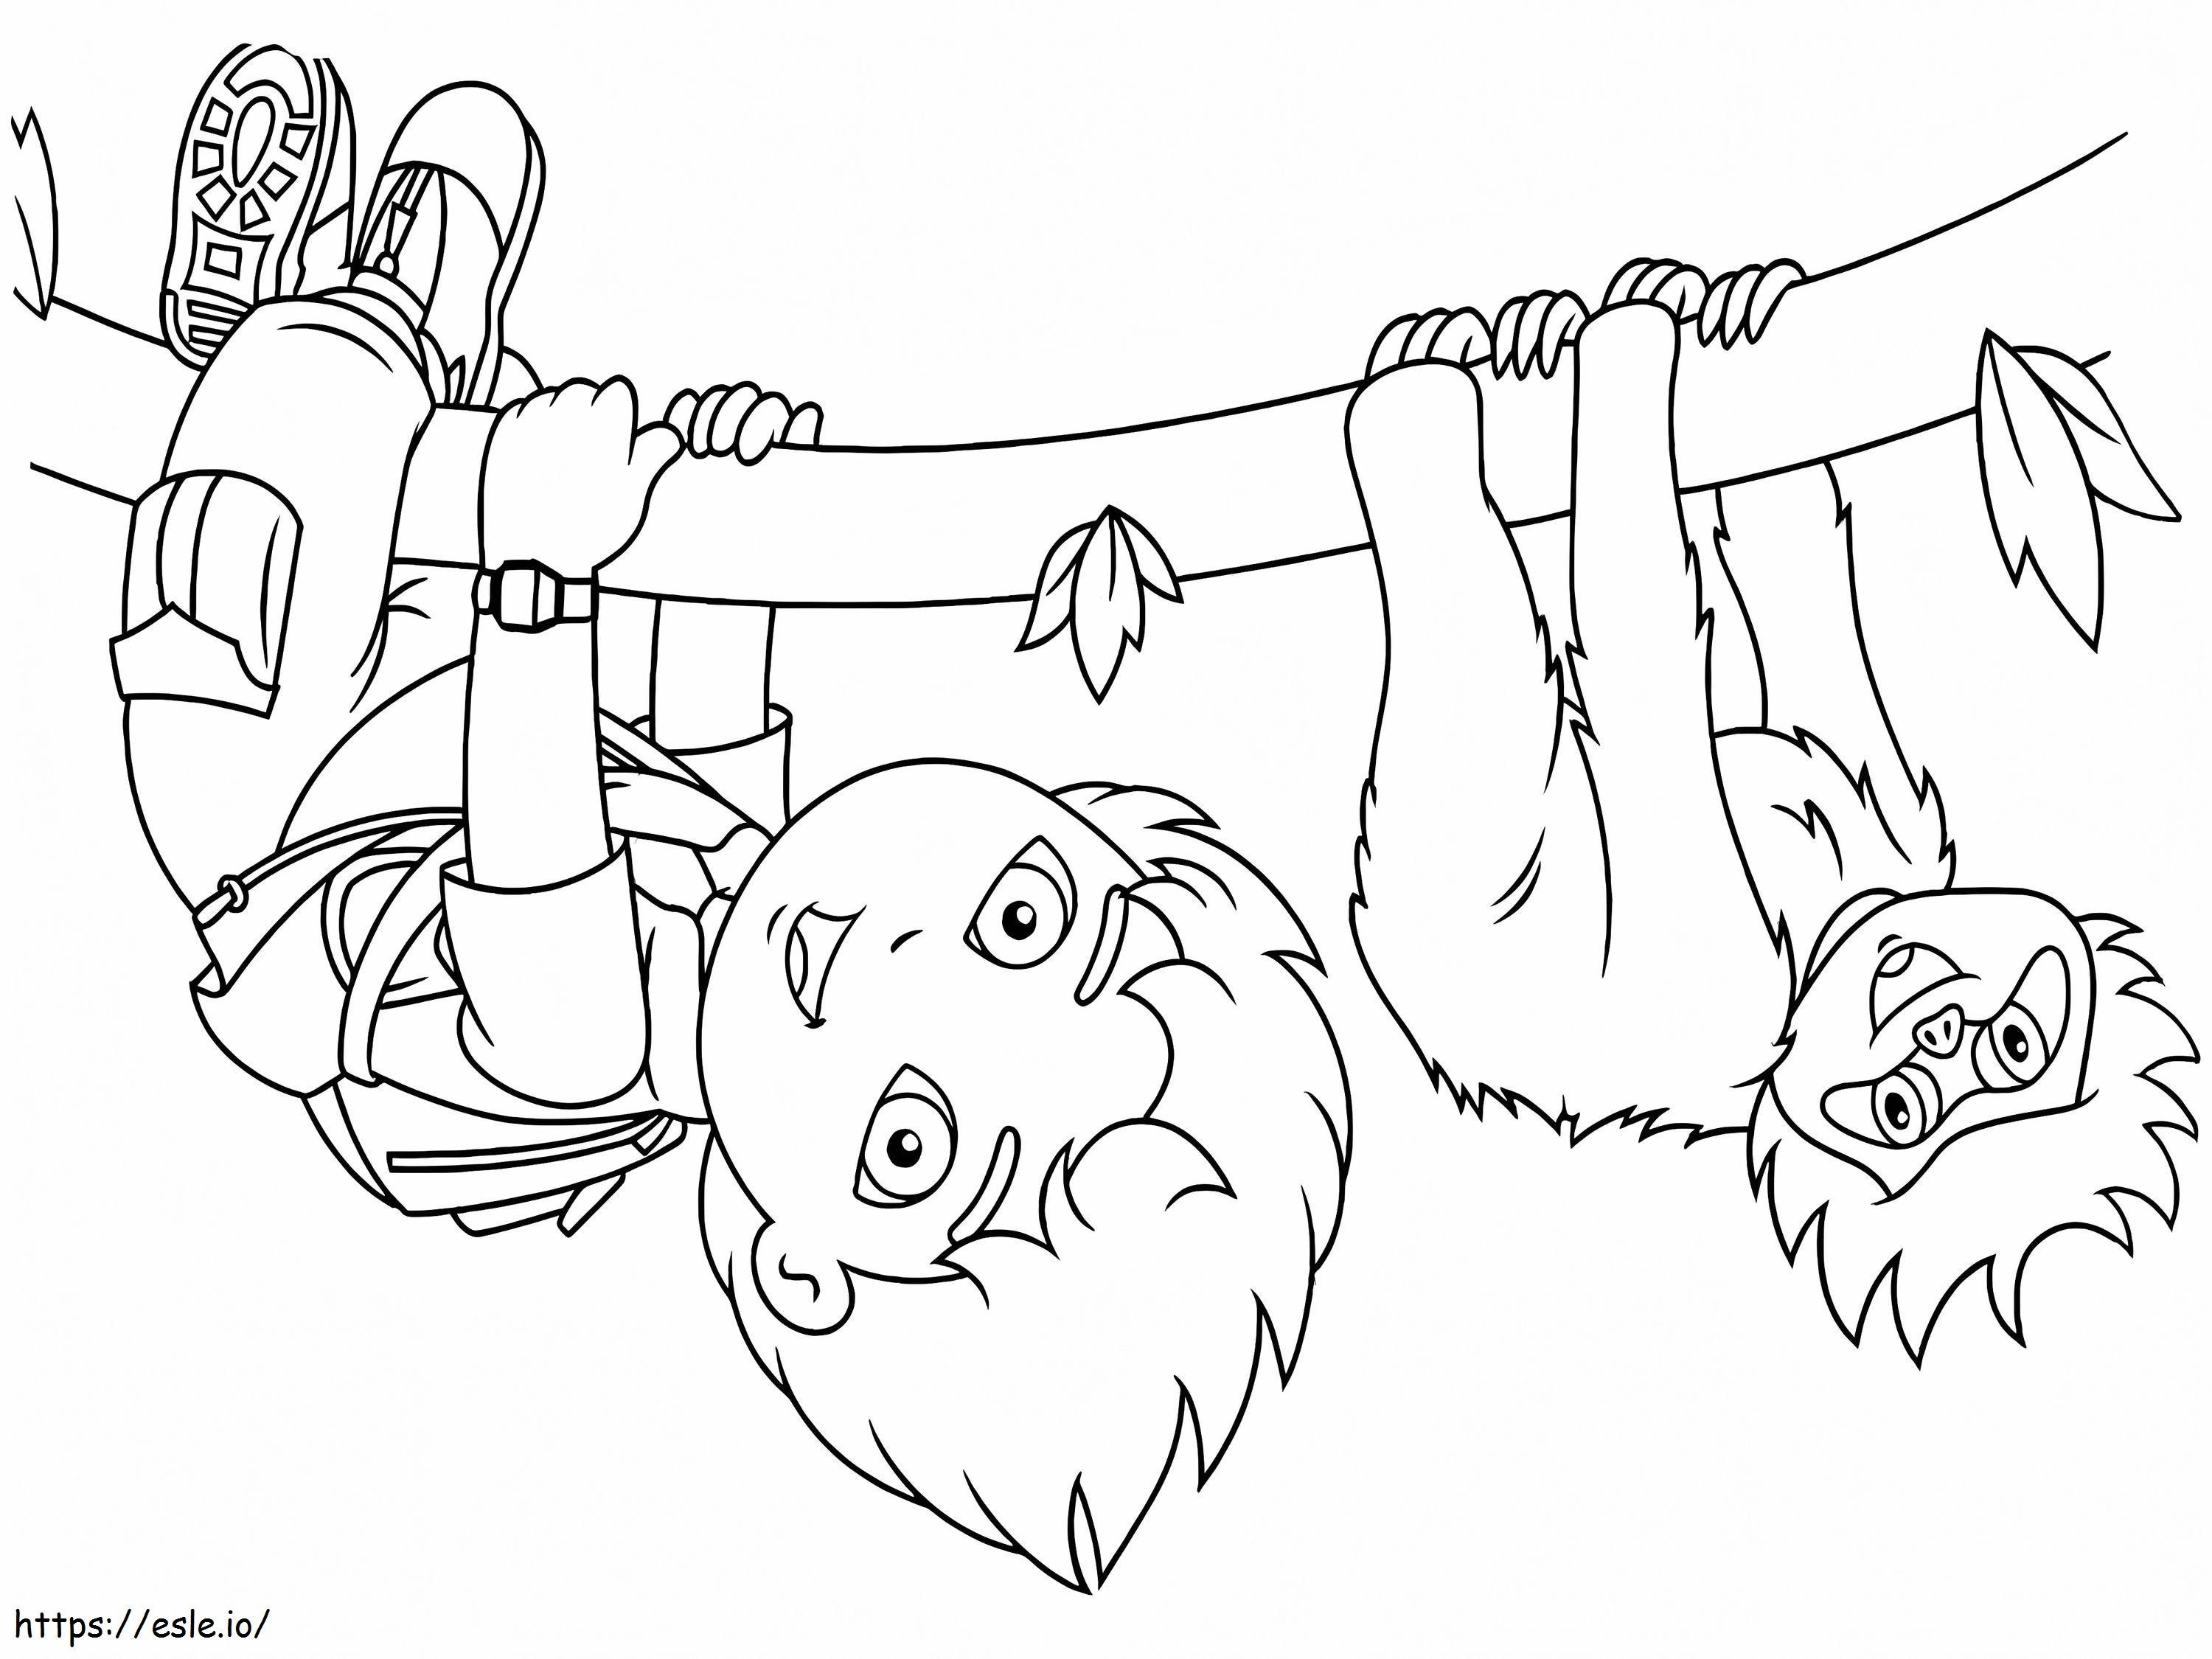 Diego divertente e arrampicata scimmia da colorare